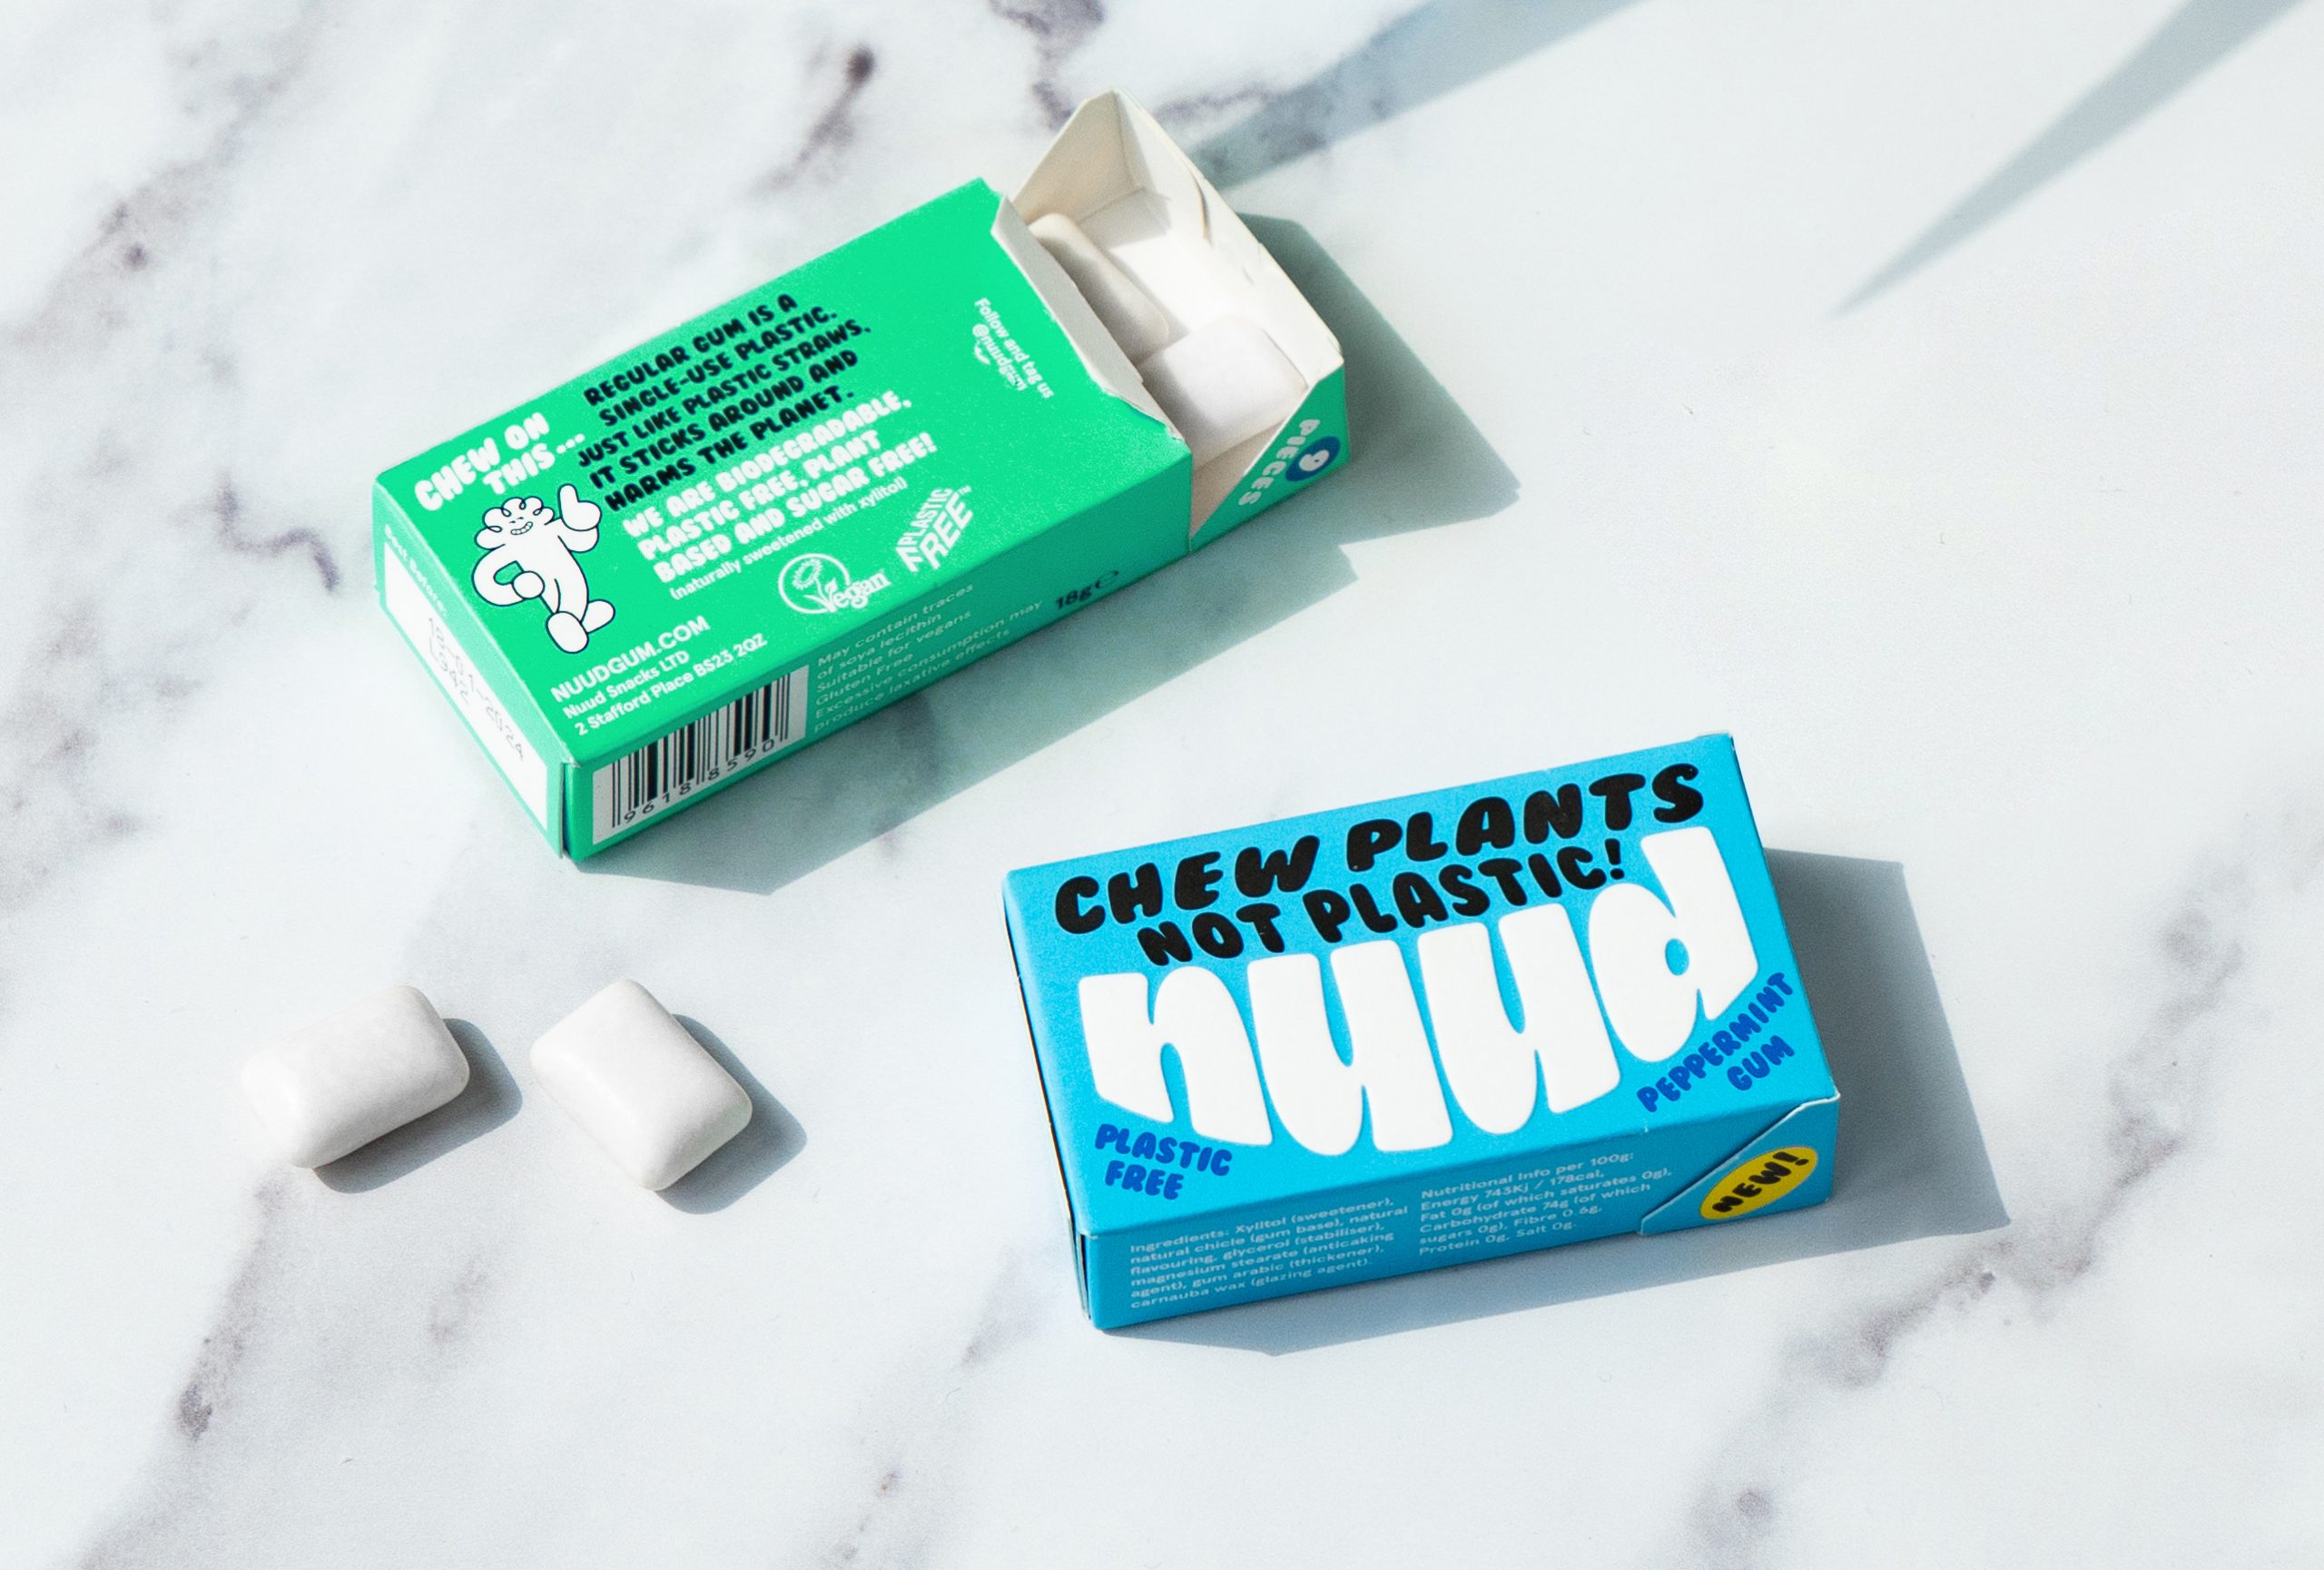 Epicurium announces crisps, gum additions to premium product range